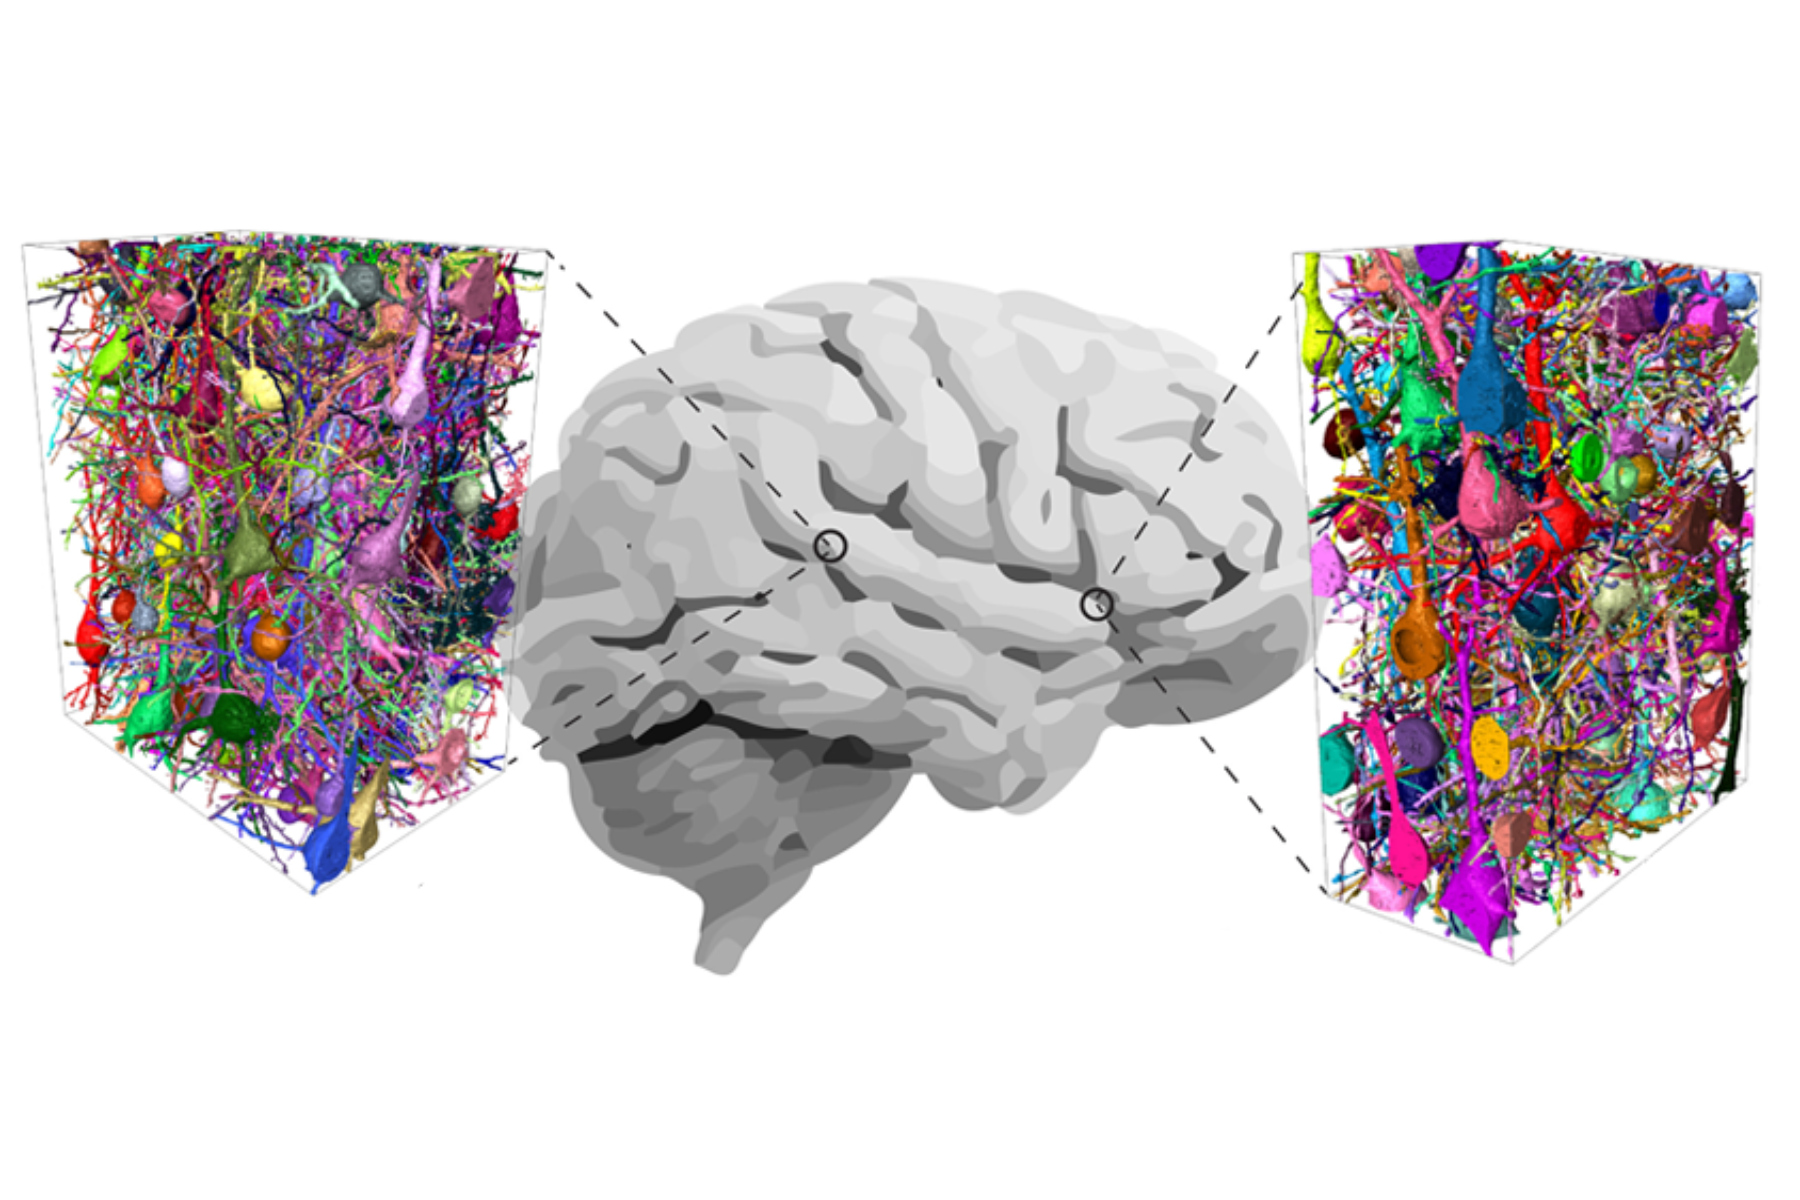 Εγκέφαλος: Η νευροεπιστήμη αναλύει τον ανθρώπινο εγκέφαλο